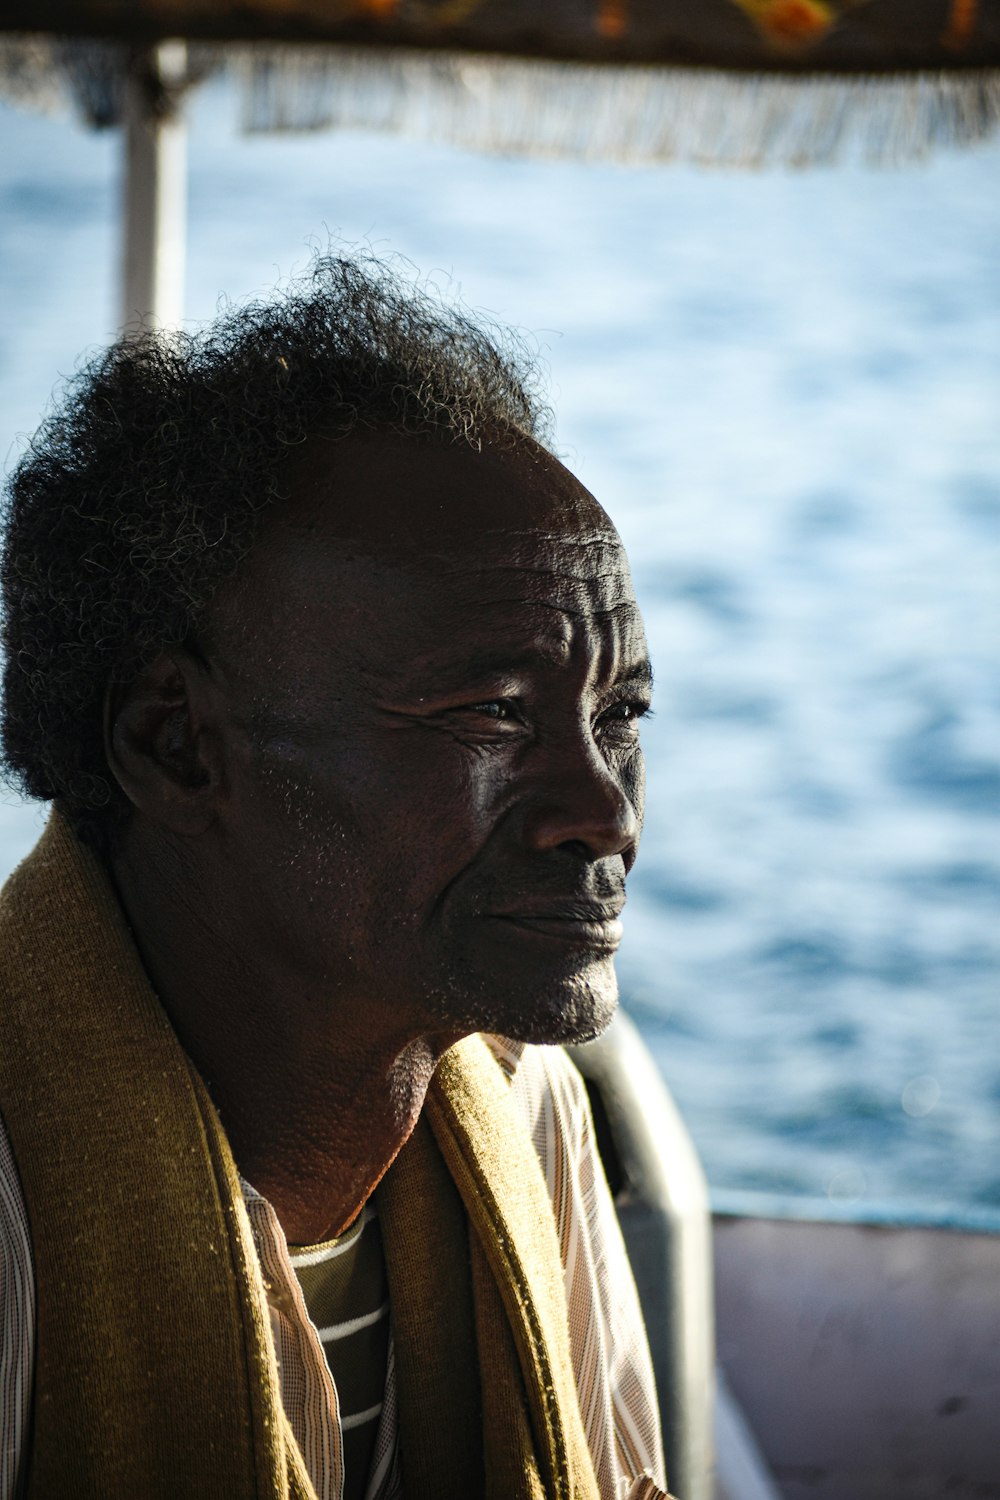 Un uomo seduto su una barca nell'acqua